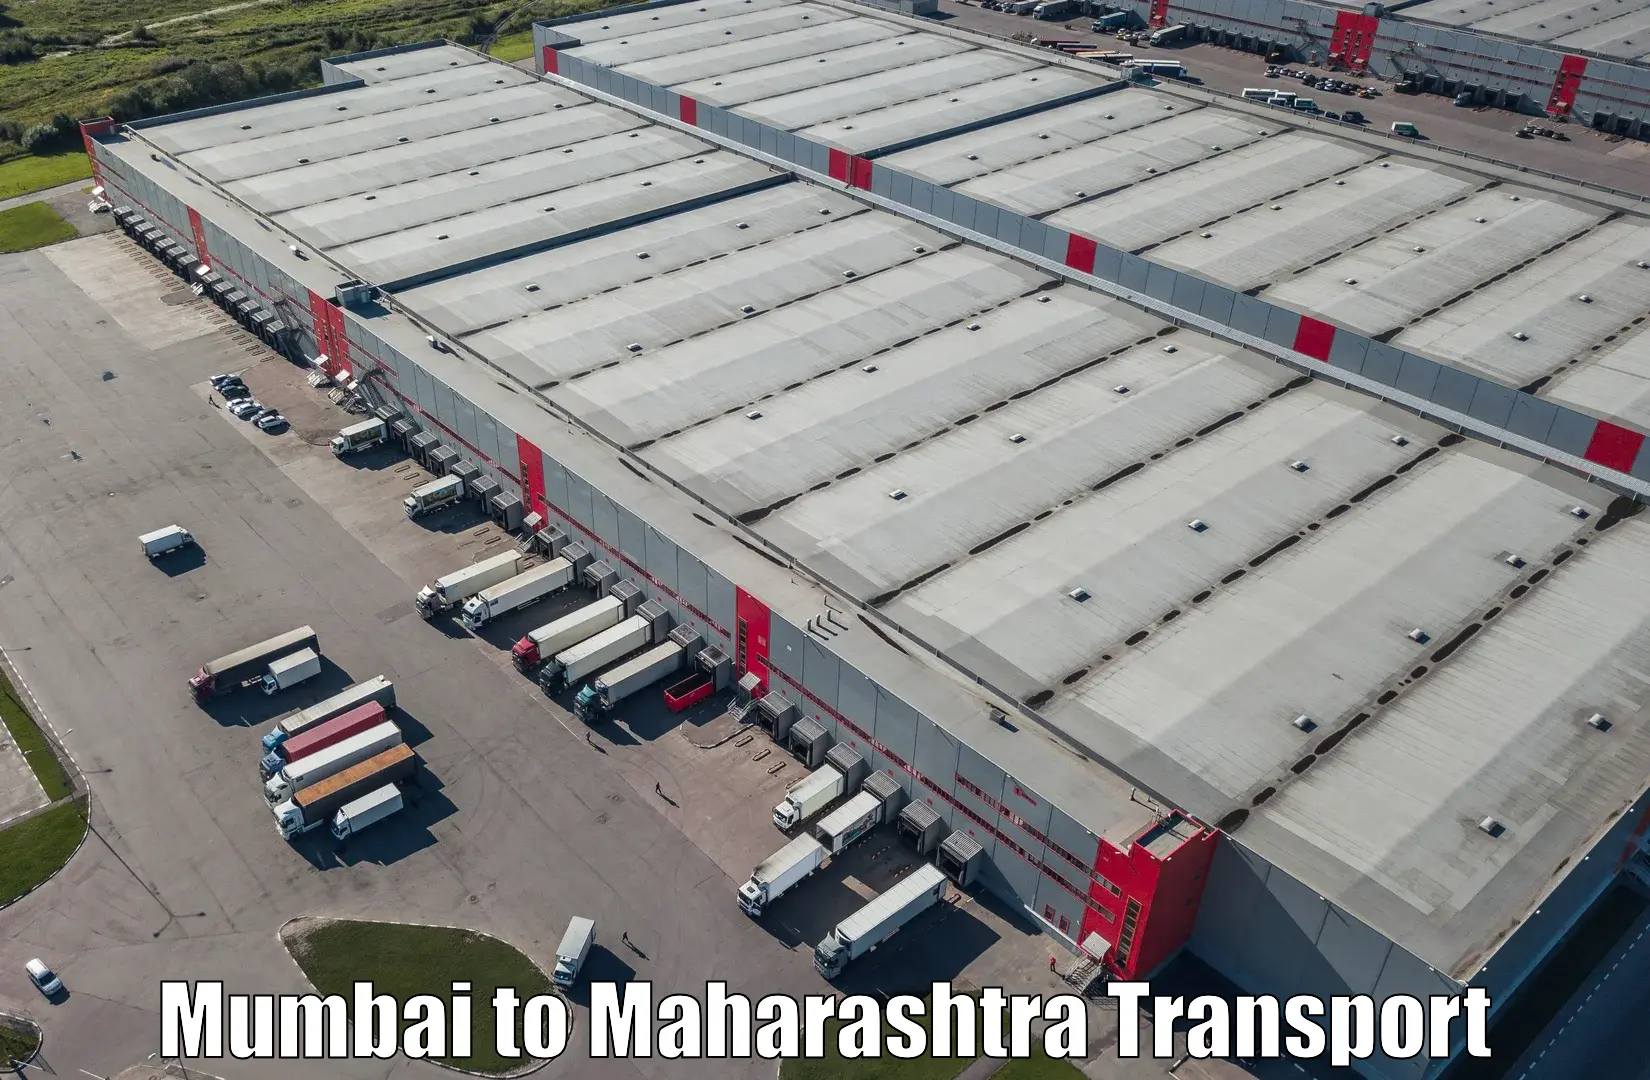 Daily parcel service transport Mumbai to Yeola